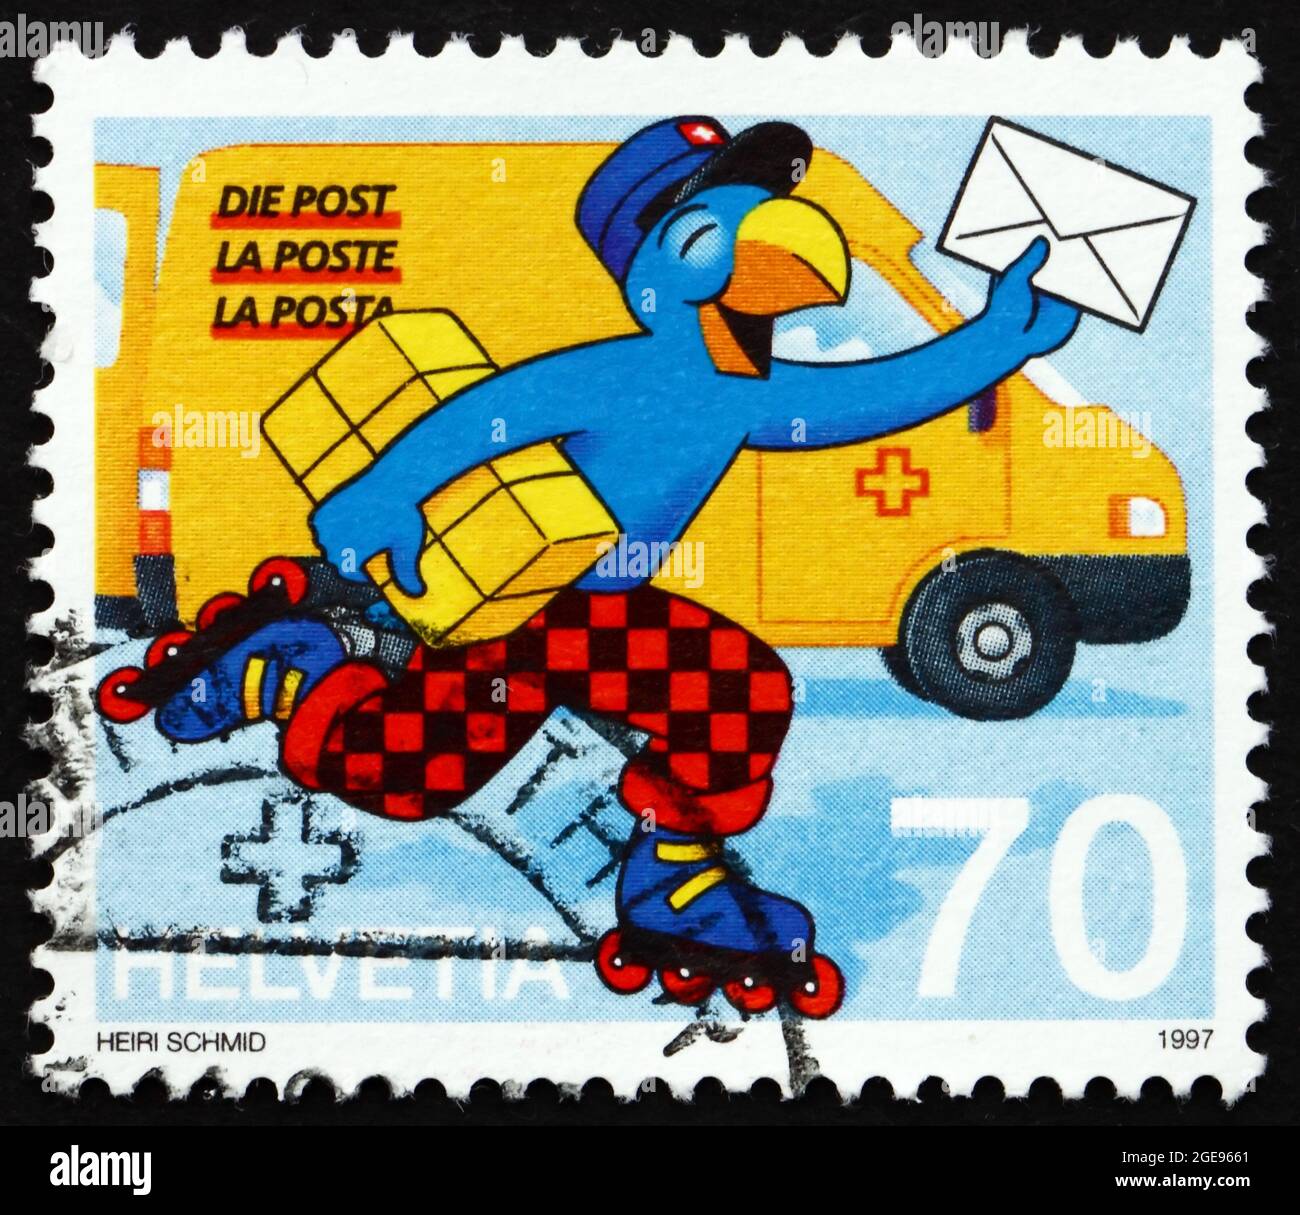 SVIZZERA - CIRCA 1997: Un francobollo stampato in Svizzera mostra Globi come Postman, cartoon svizzero, circa 1997 Foto Stock